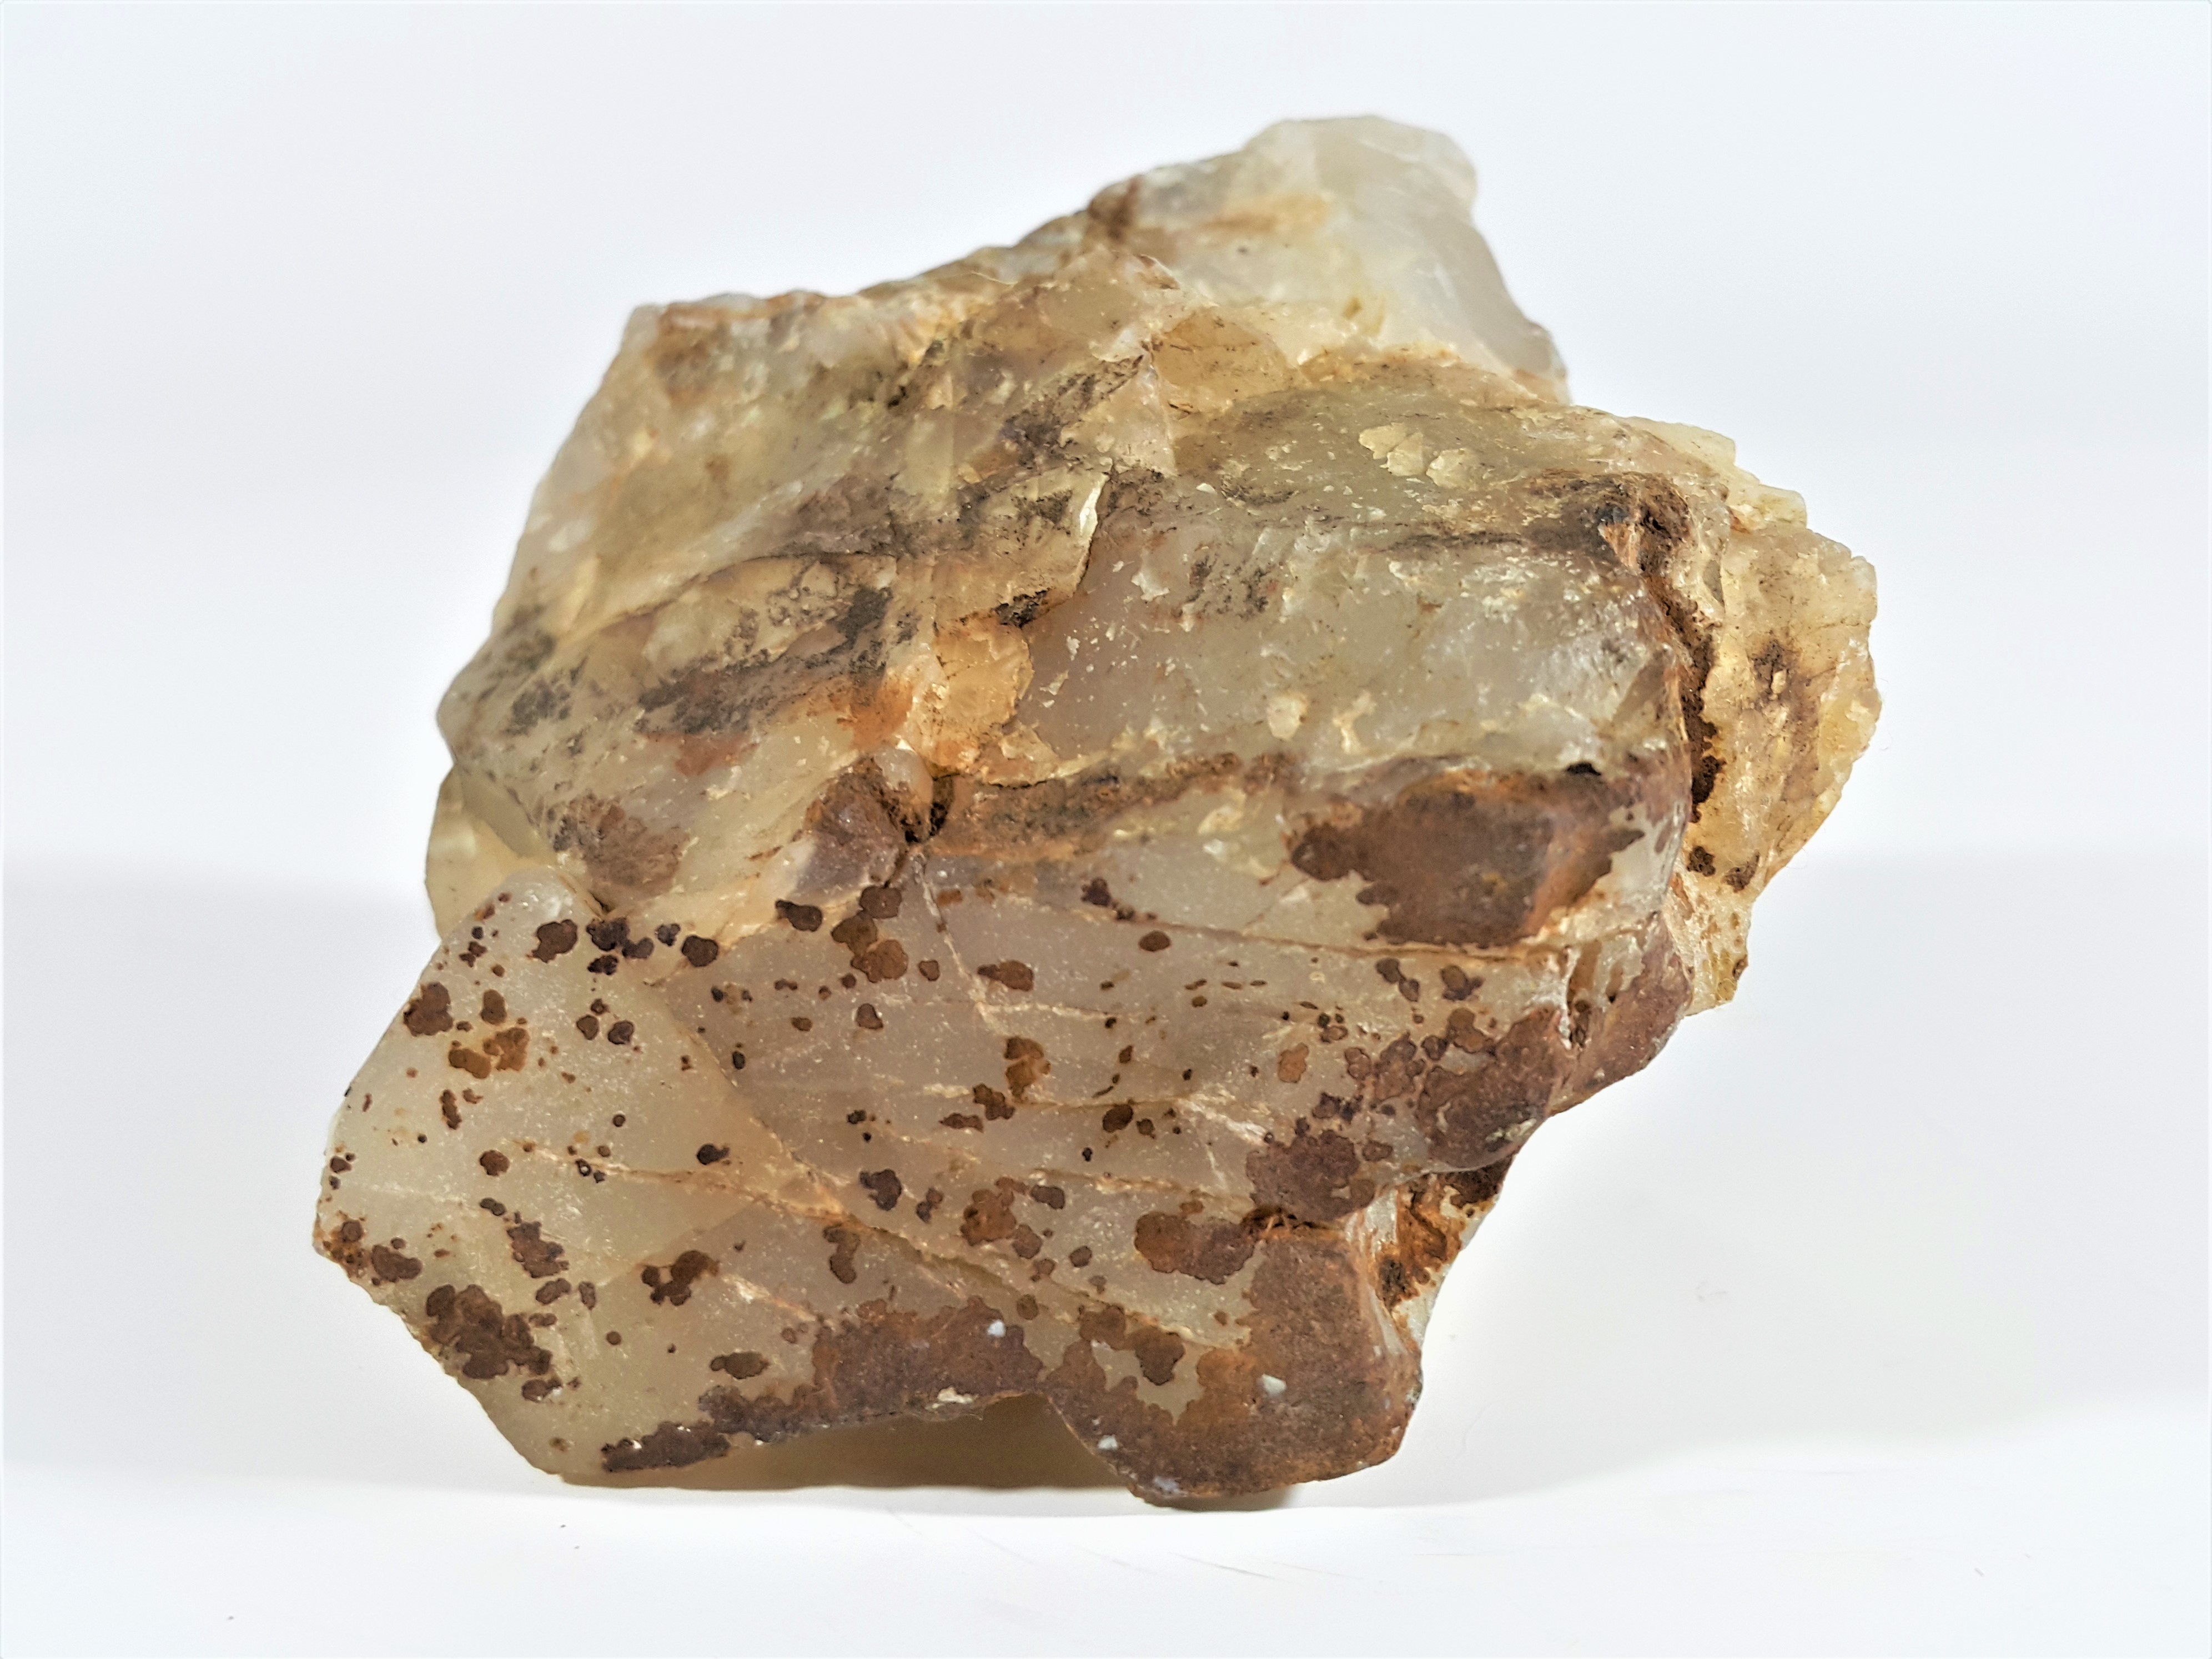 銀九藝] 早期北投石天然聚合狀結晶體能量石原礦淨重~383公克| Yahoo 